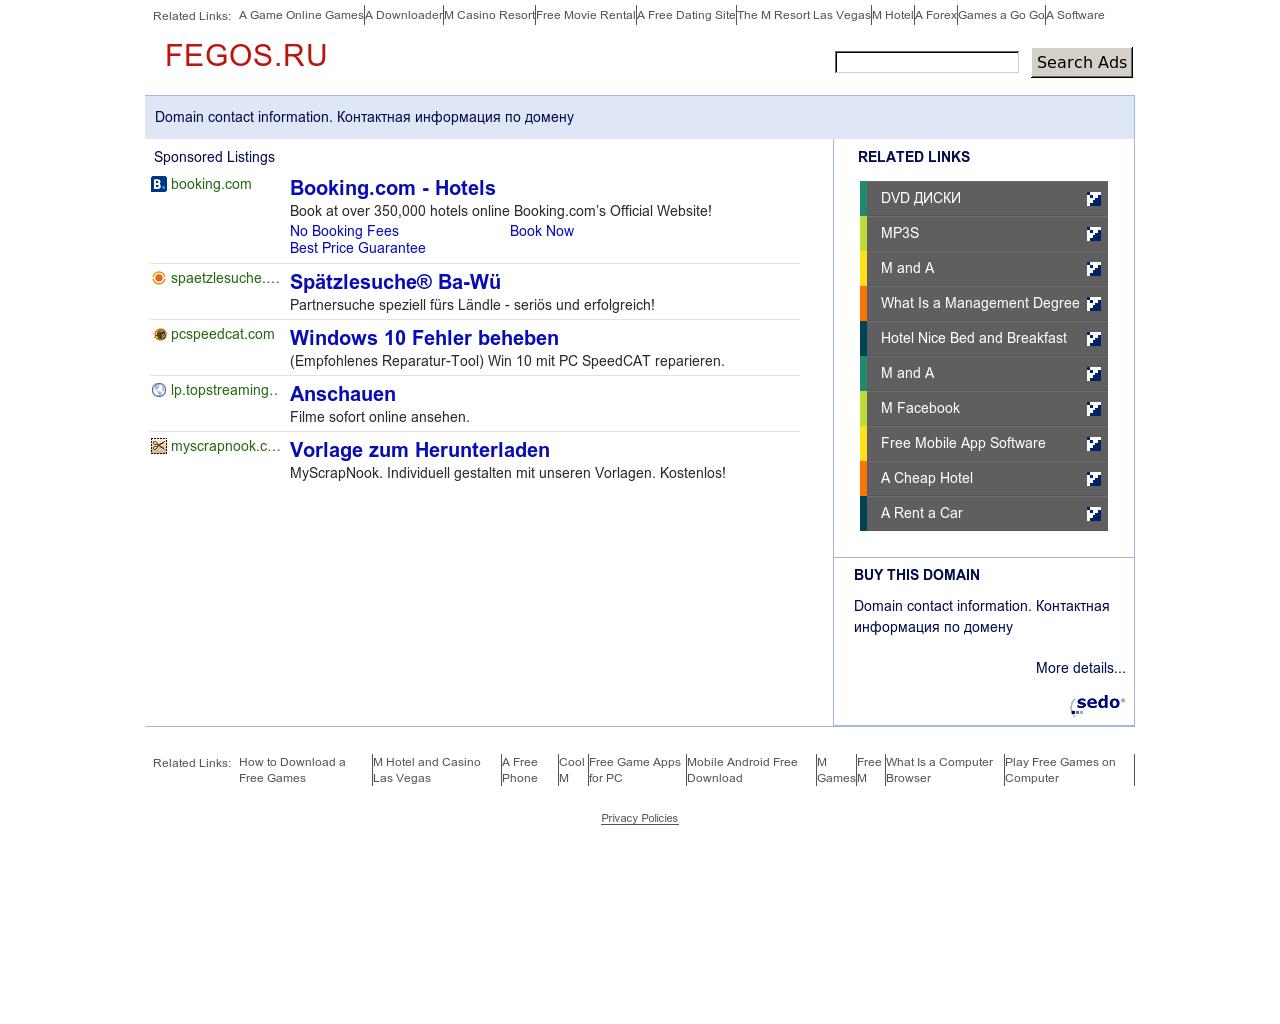 Изображение сайта fegos.ru в разрешении 1280x1024